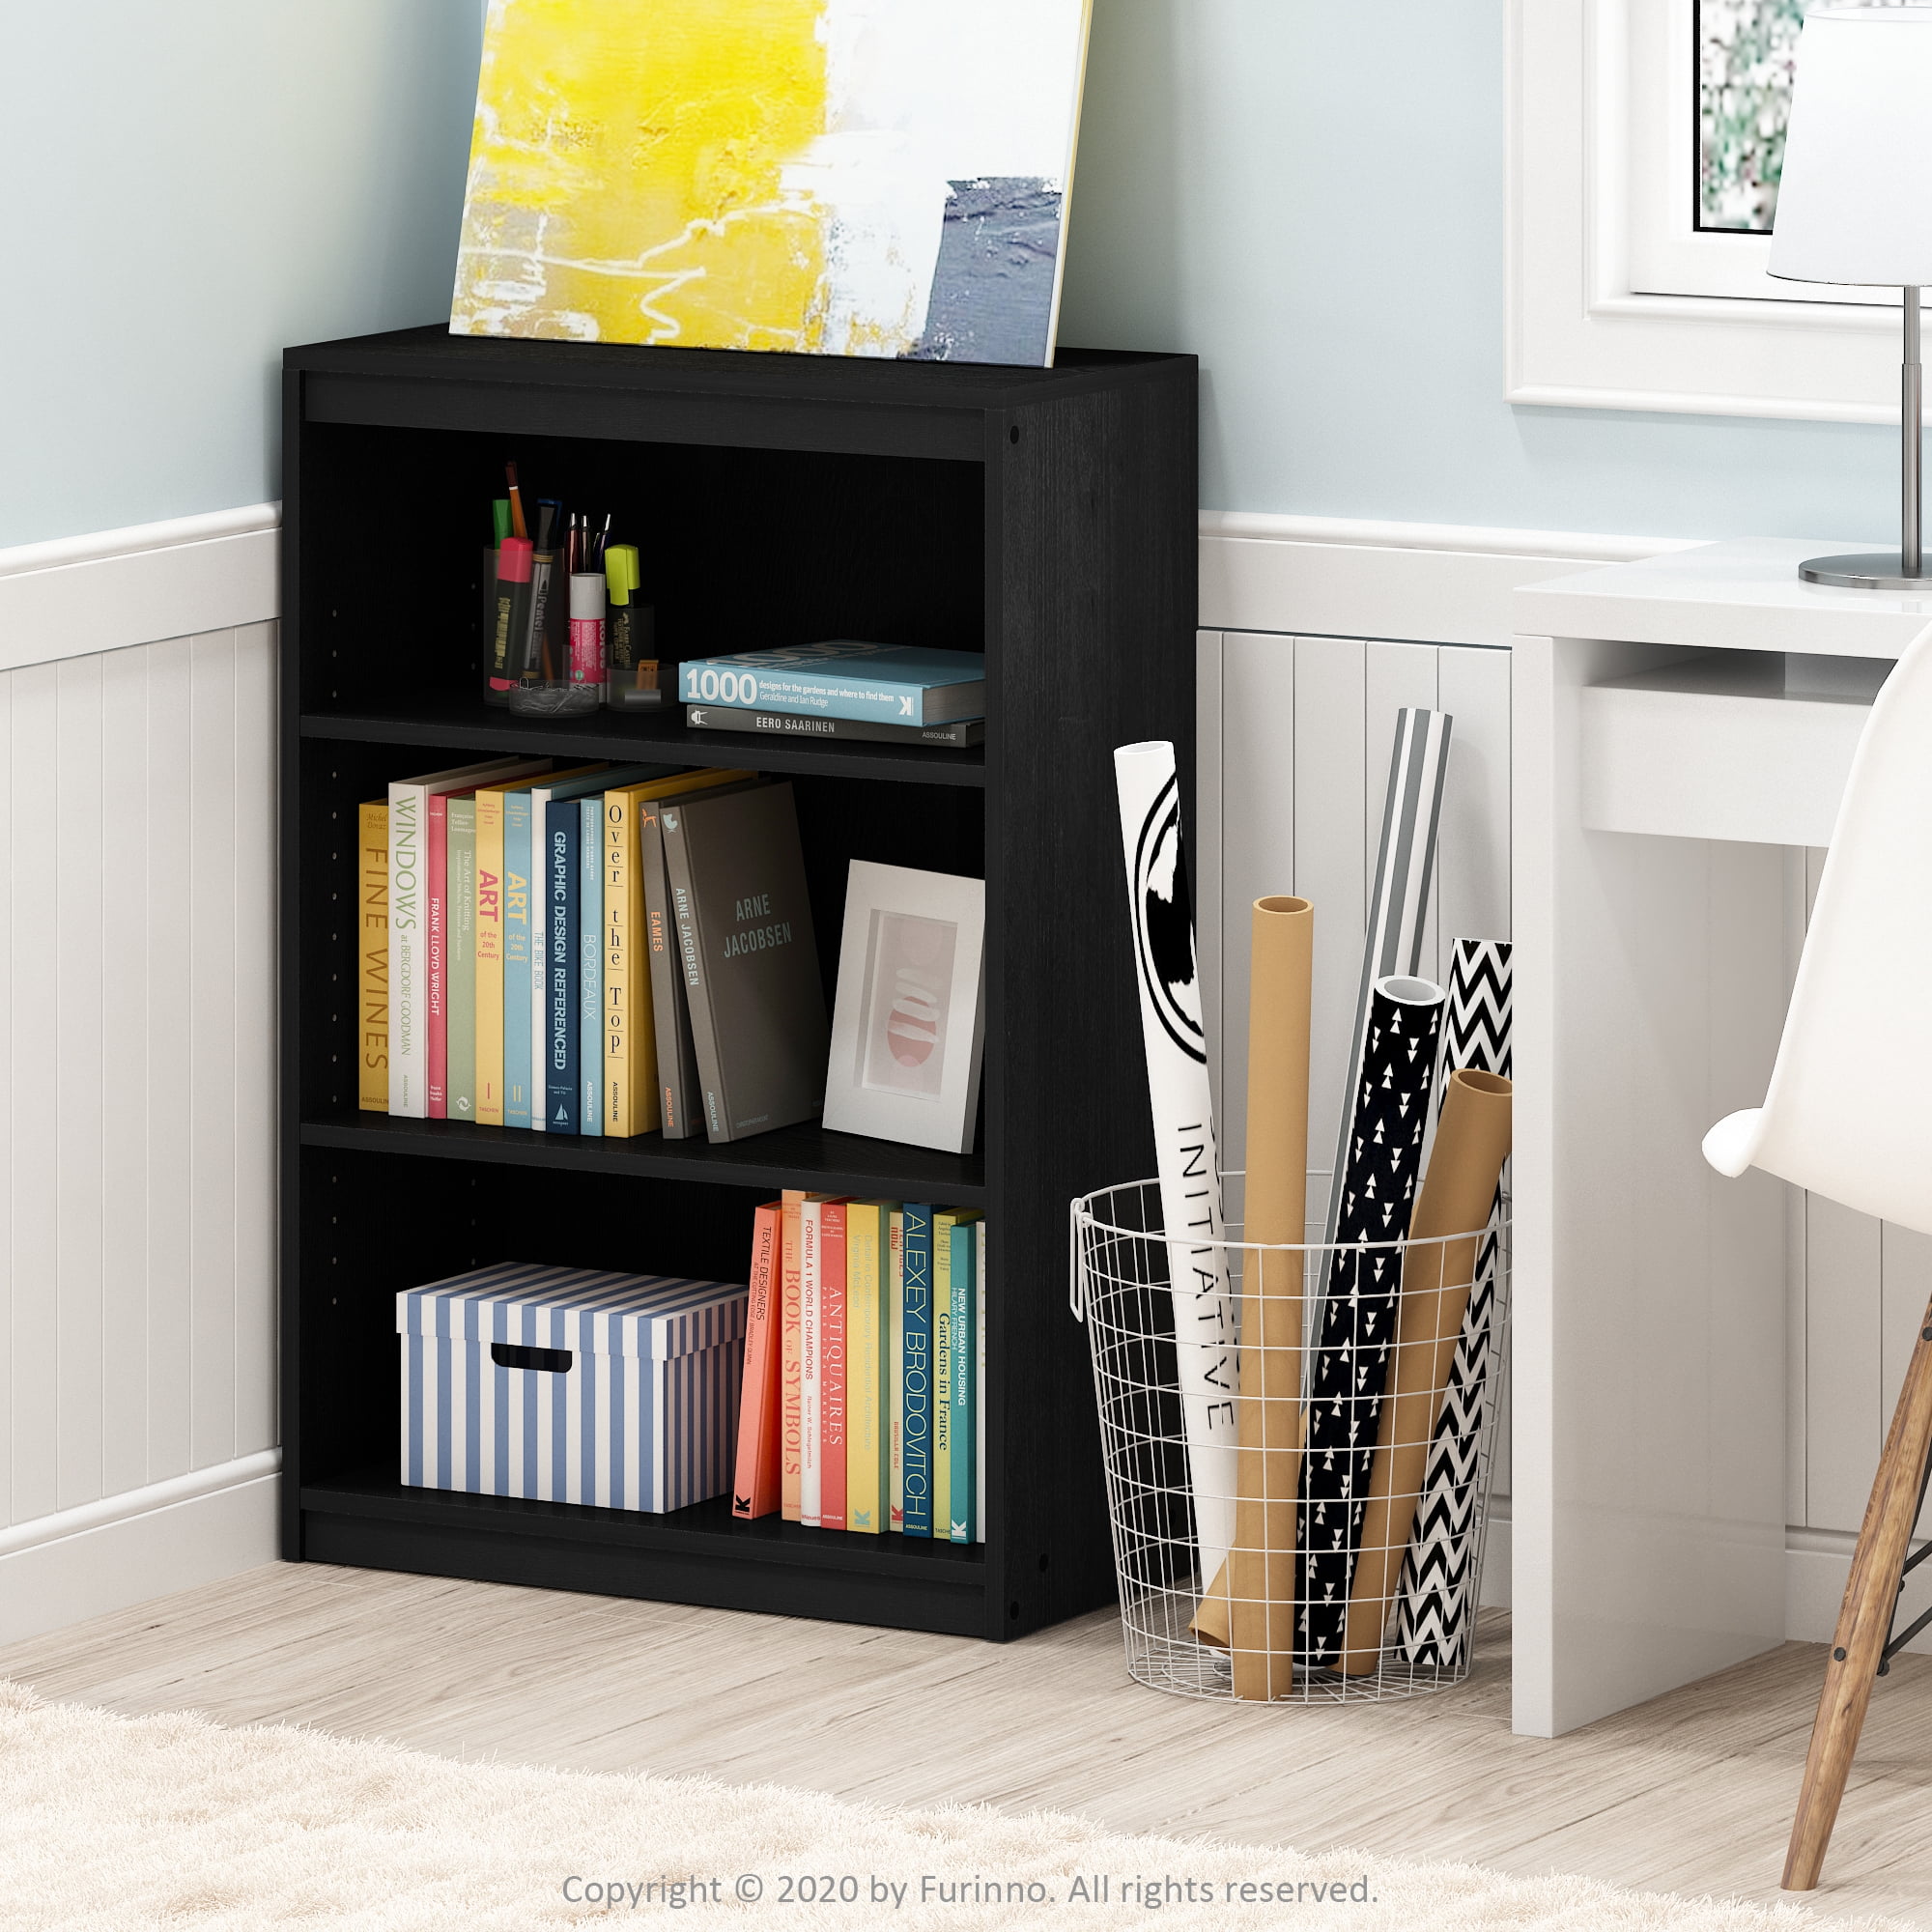 FURINNO JAYA Simple Home 3-Tier Adjustable Shelf Bookcase Espresso 